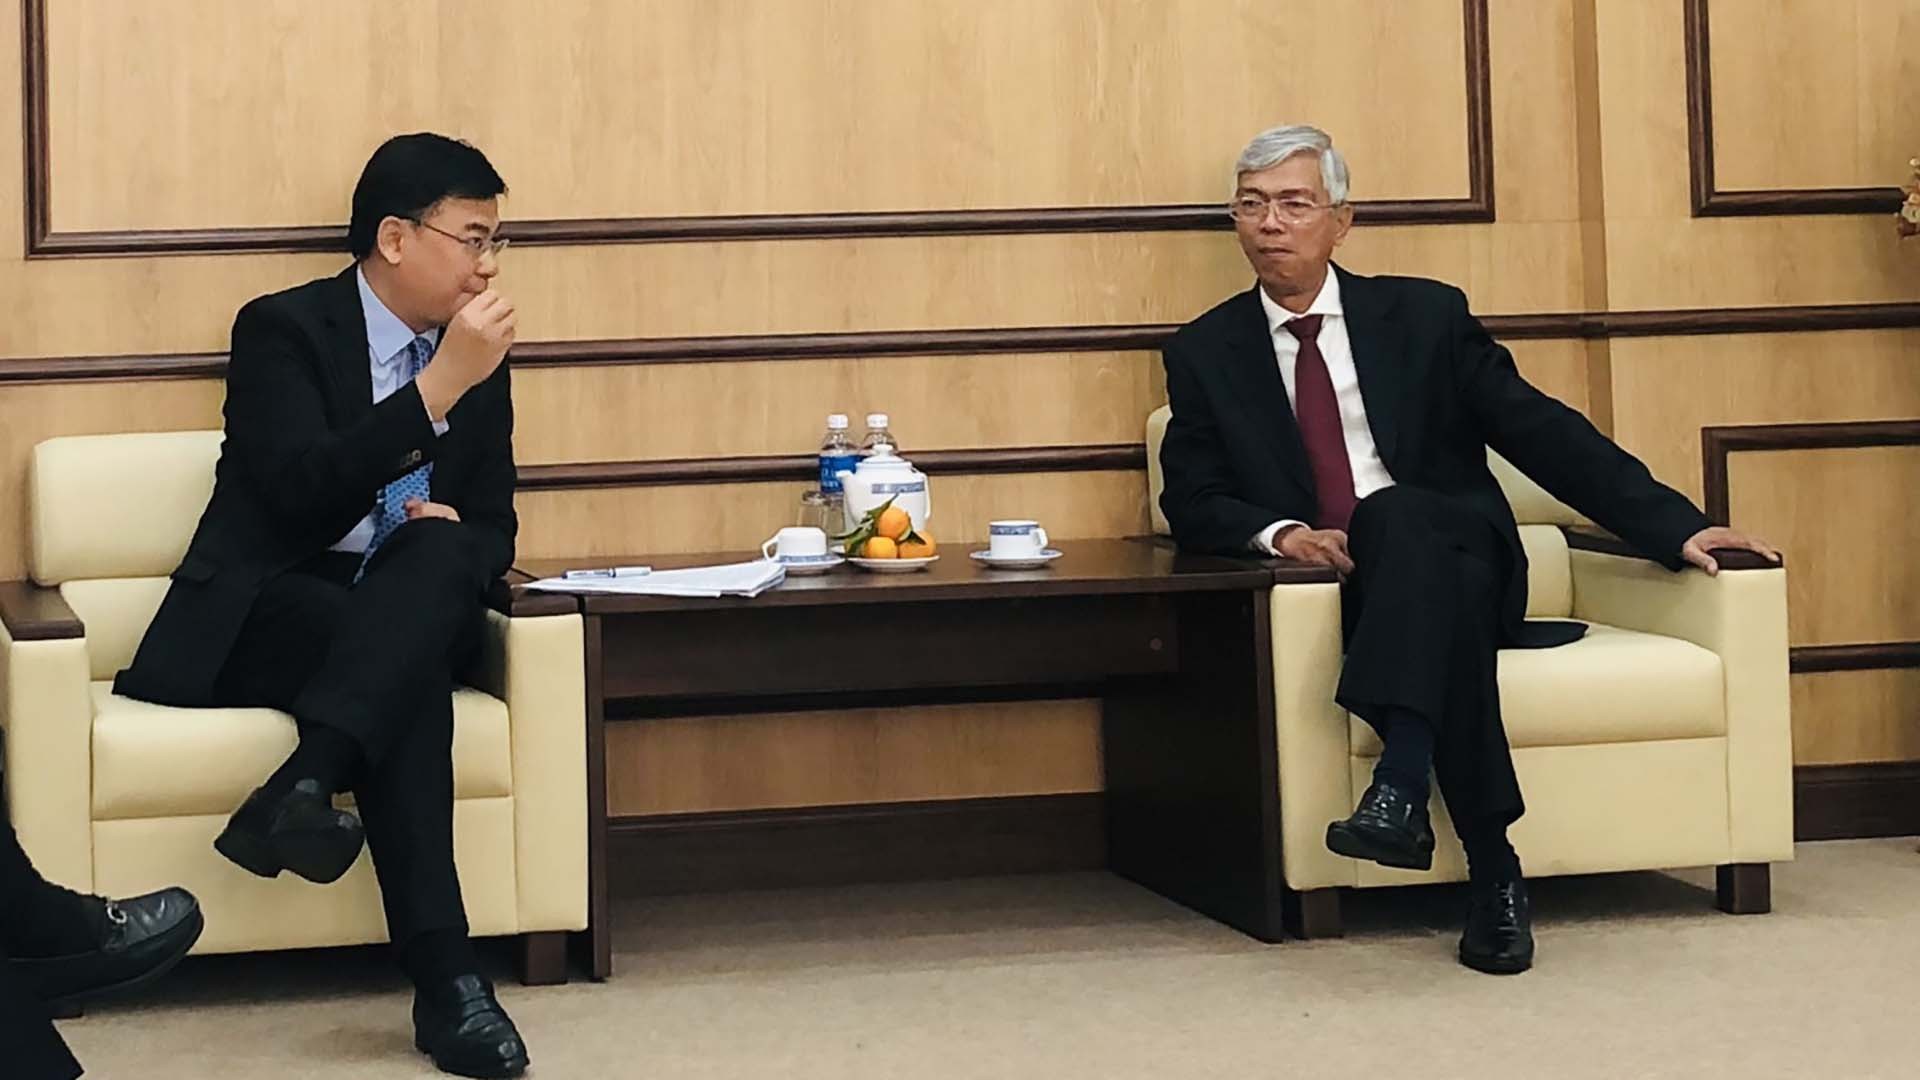  Thứ trưởng Phạm Quang Hiệu làm việc với đồng chí Võ Văn Hoan, Phó Chủ tịch UBND TP. Hồ Chí Minh 